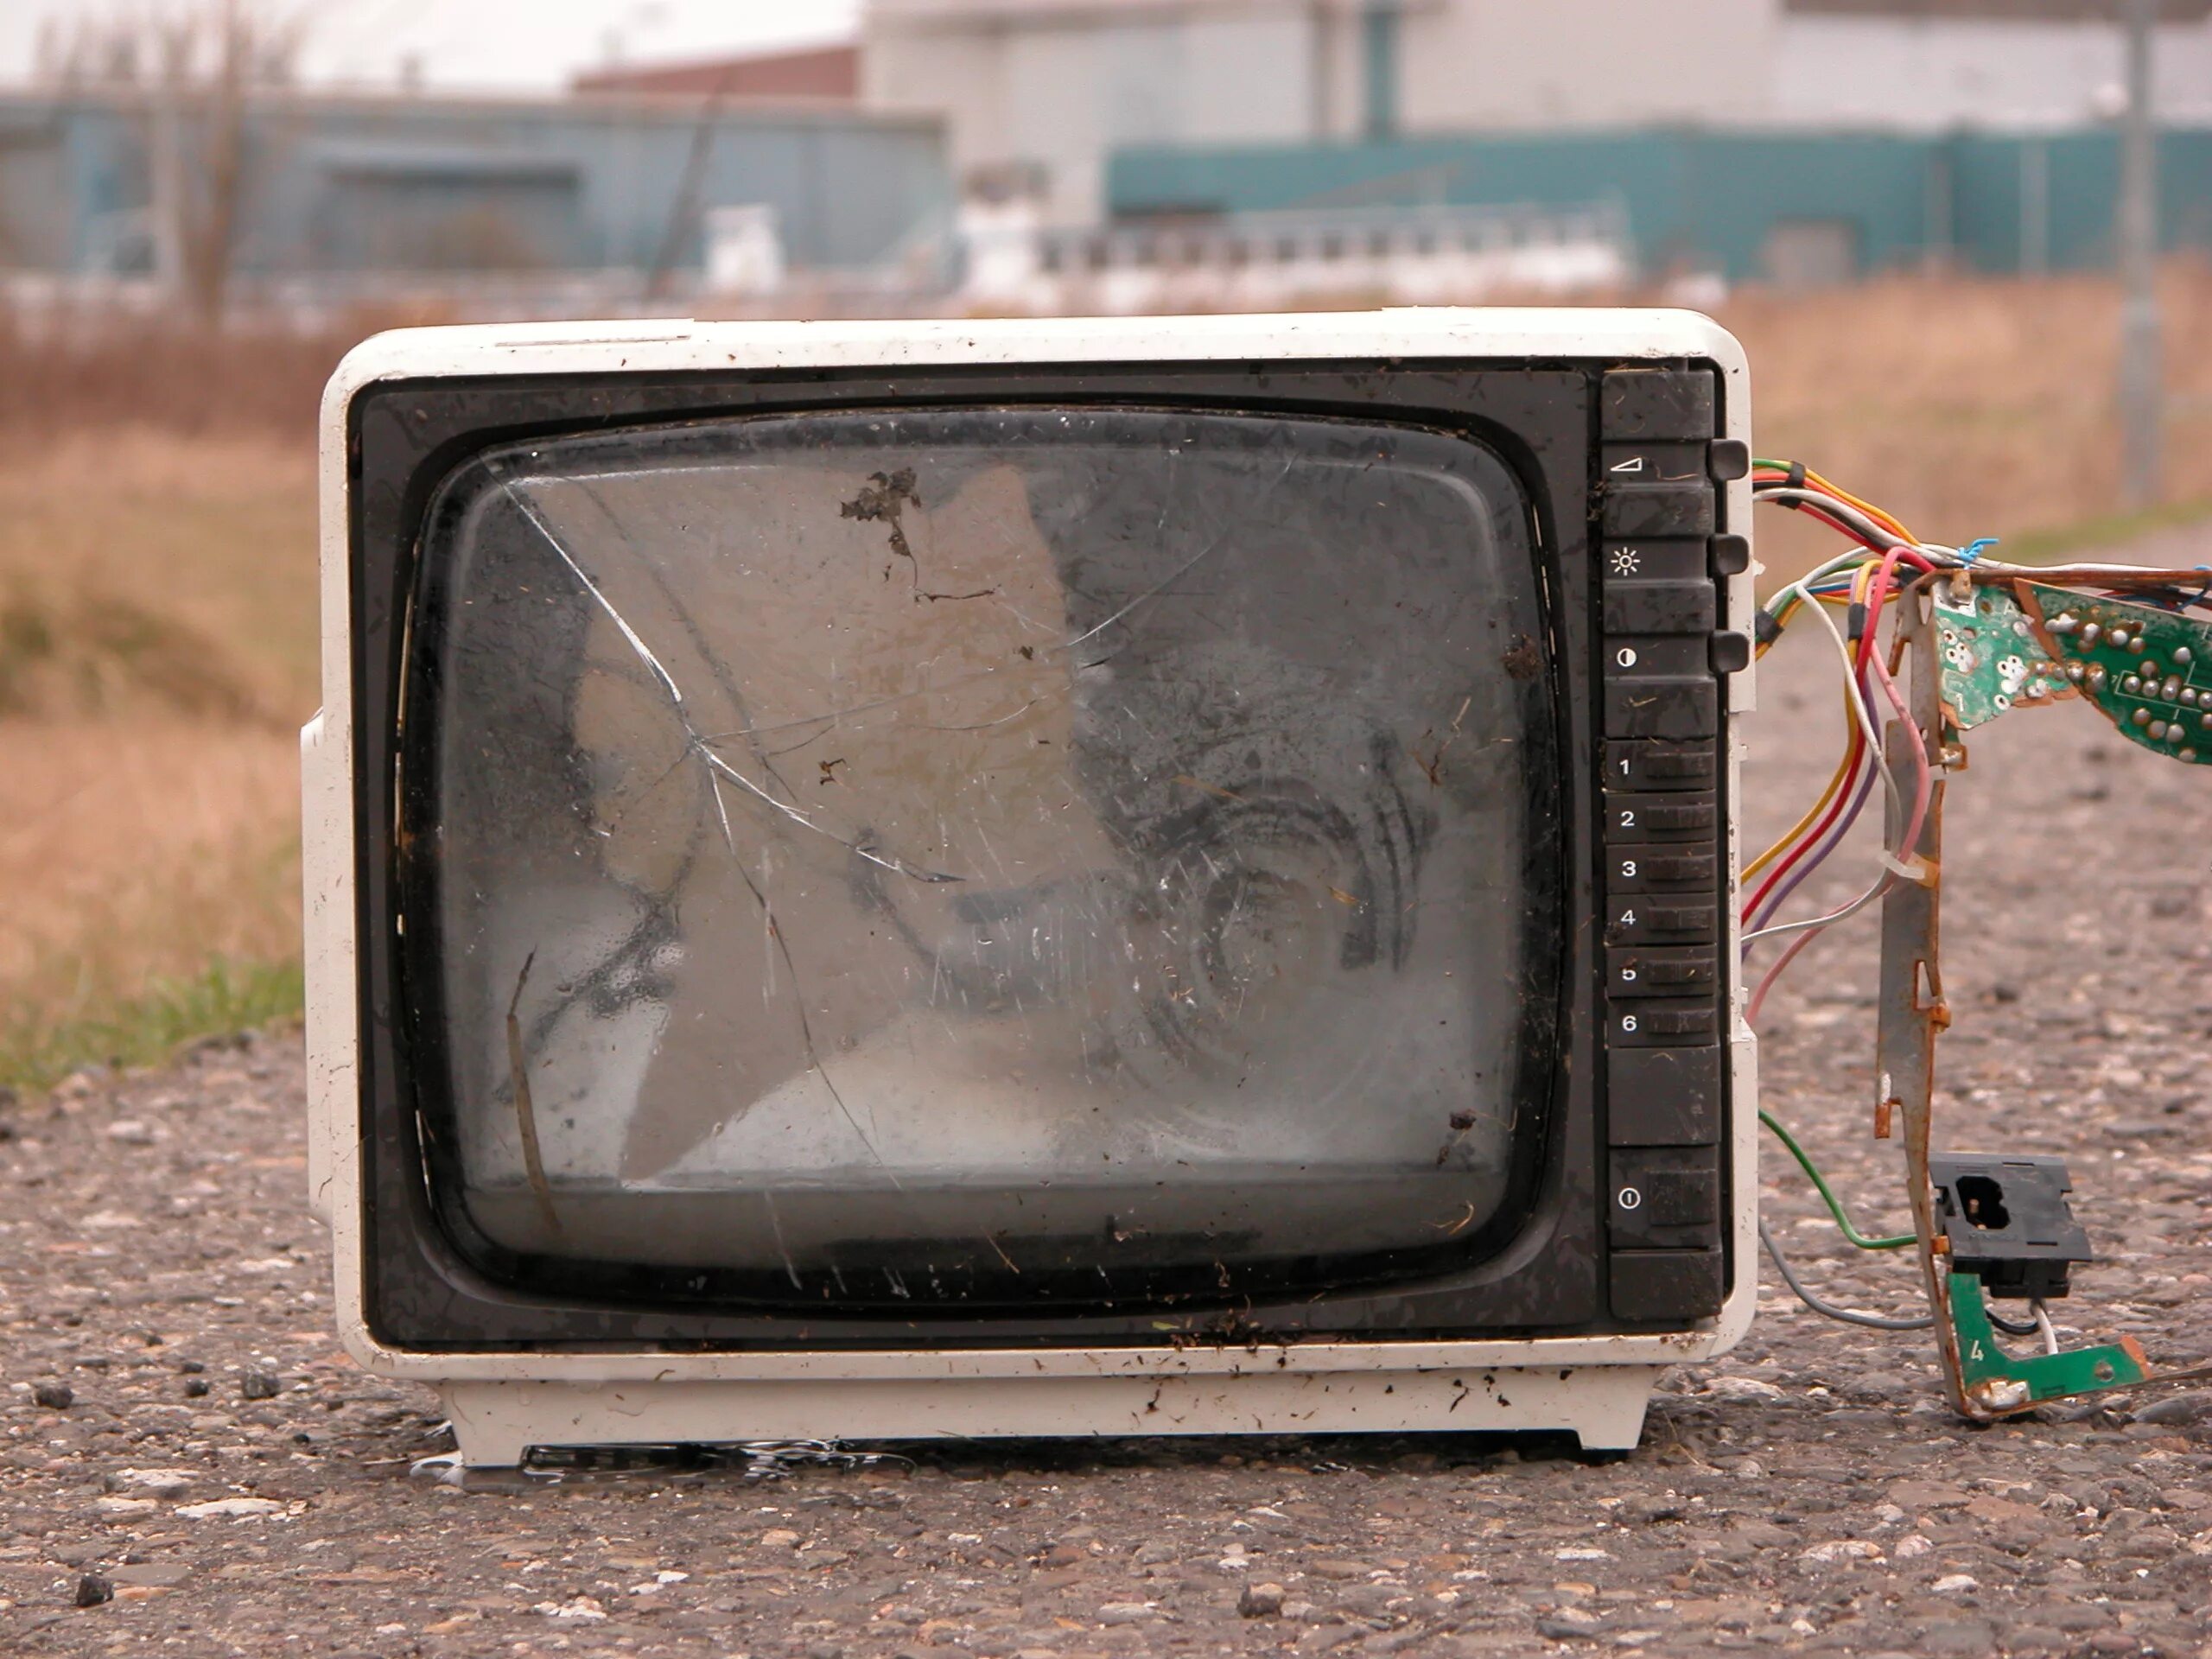 Старый телевизор 20 каналов. Сломанный телевизор. Разбитый старый телевизор. Свалка старых телевизоров. Старый поломанный телевизор.